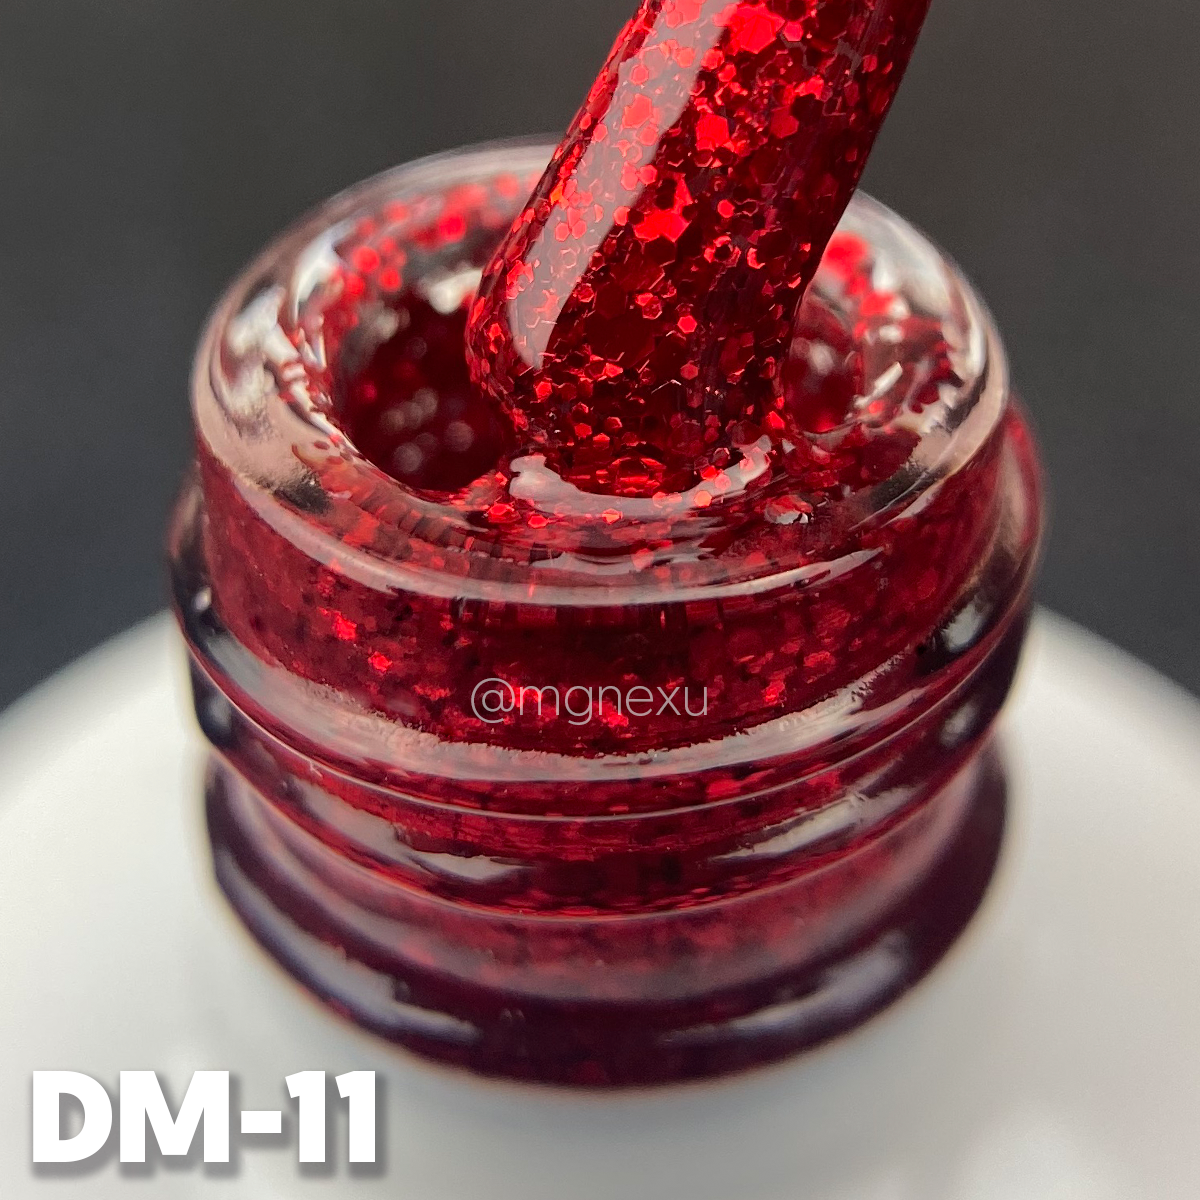 DM-11